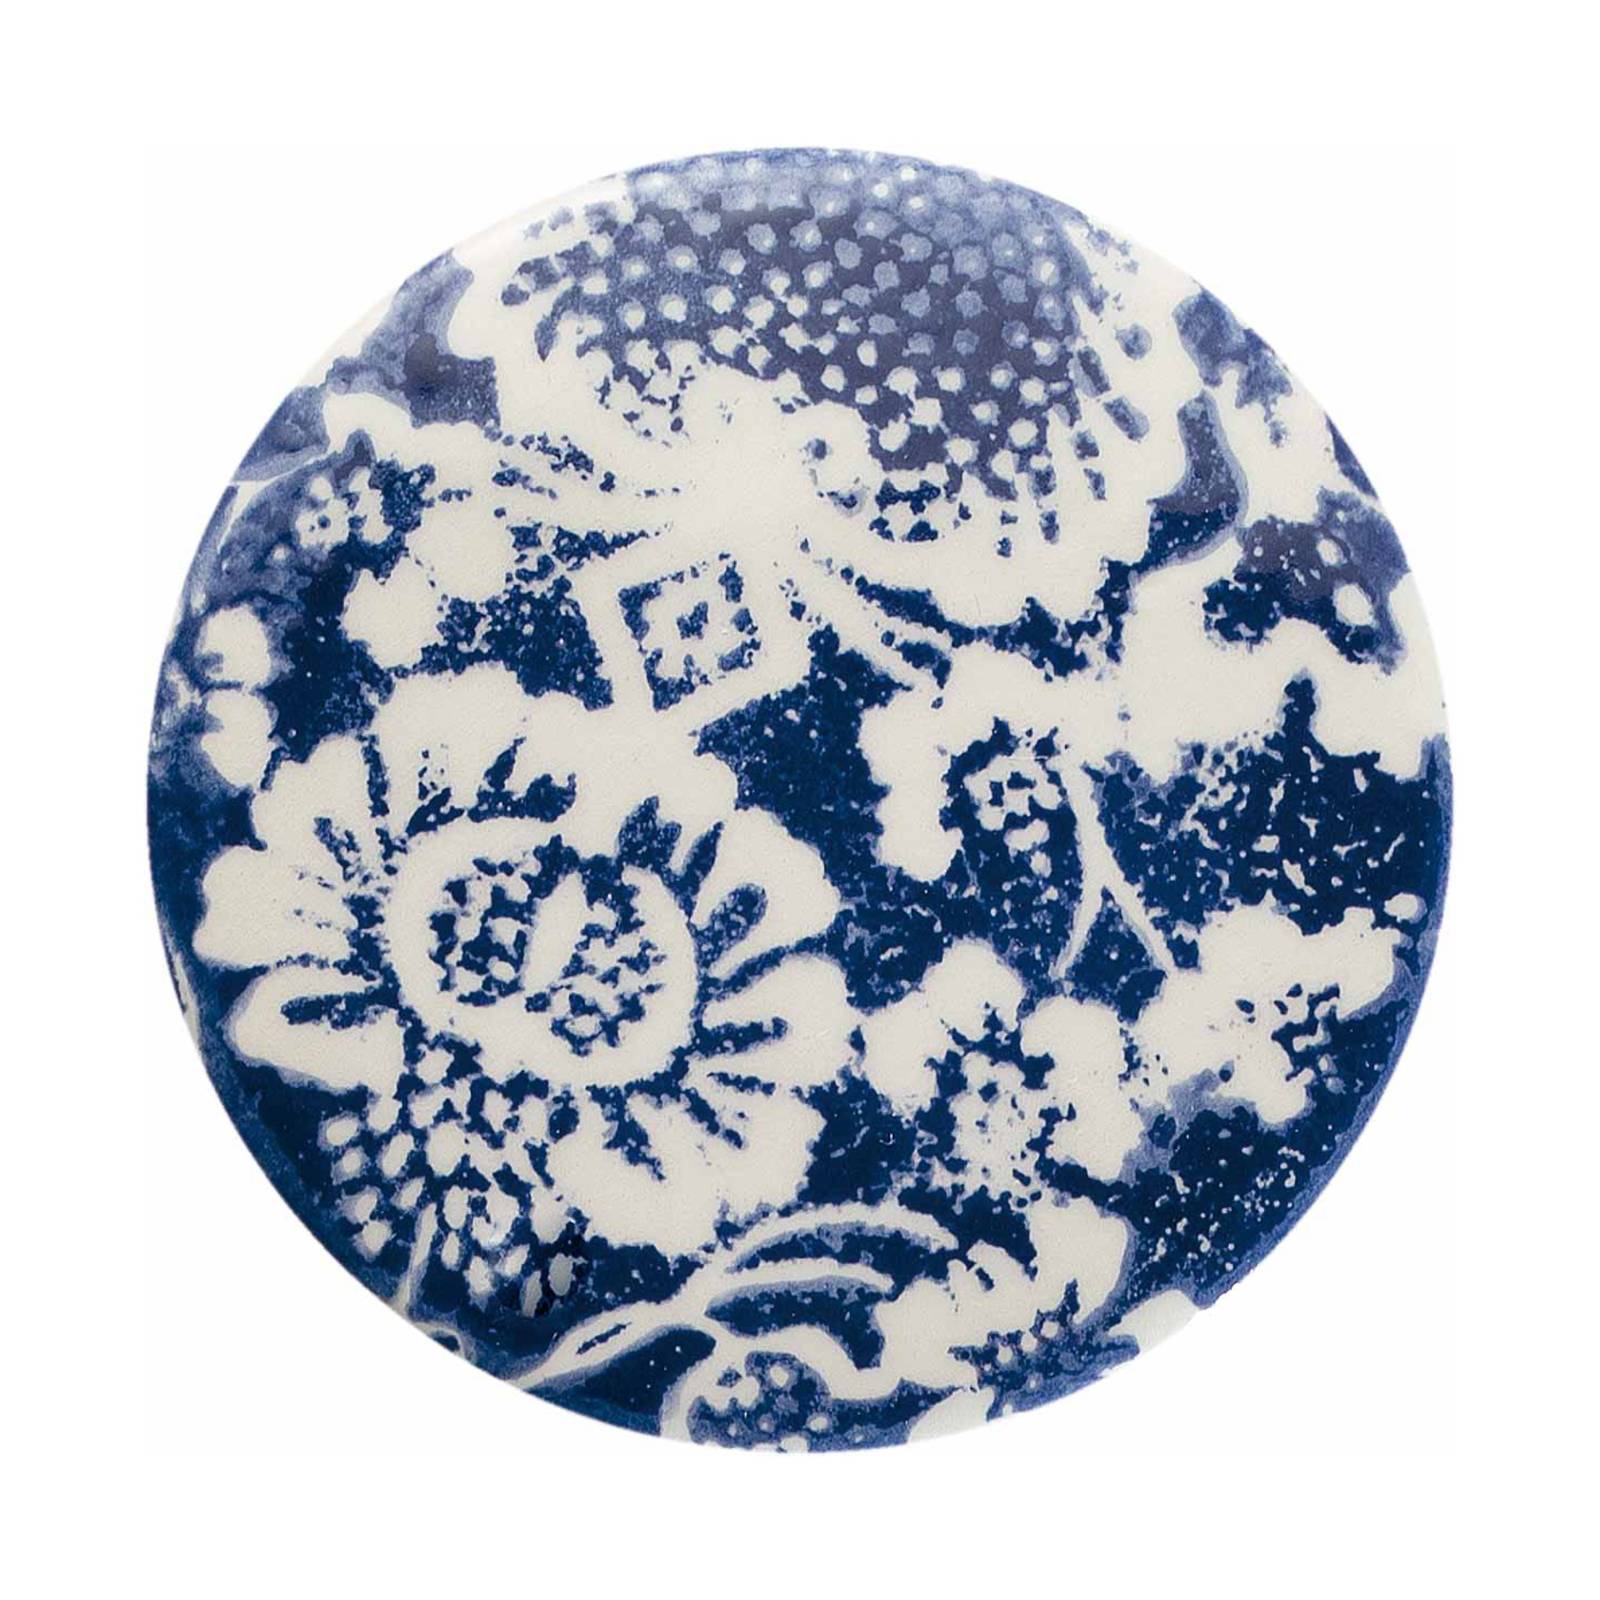 Hängelampe PI mit Blumenmuster, Ø 5,5 cm blau/weiß von Ferroluce